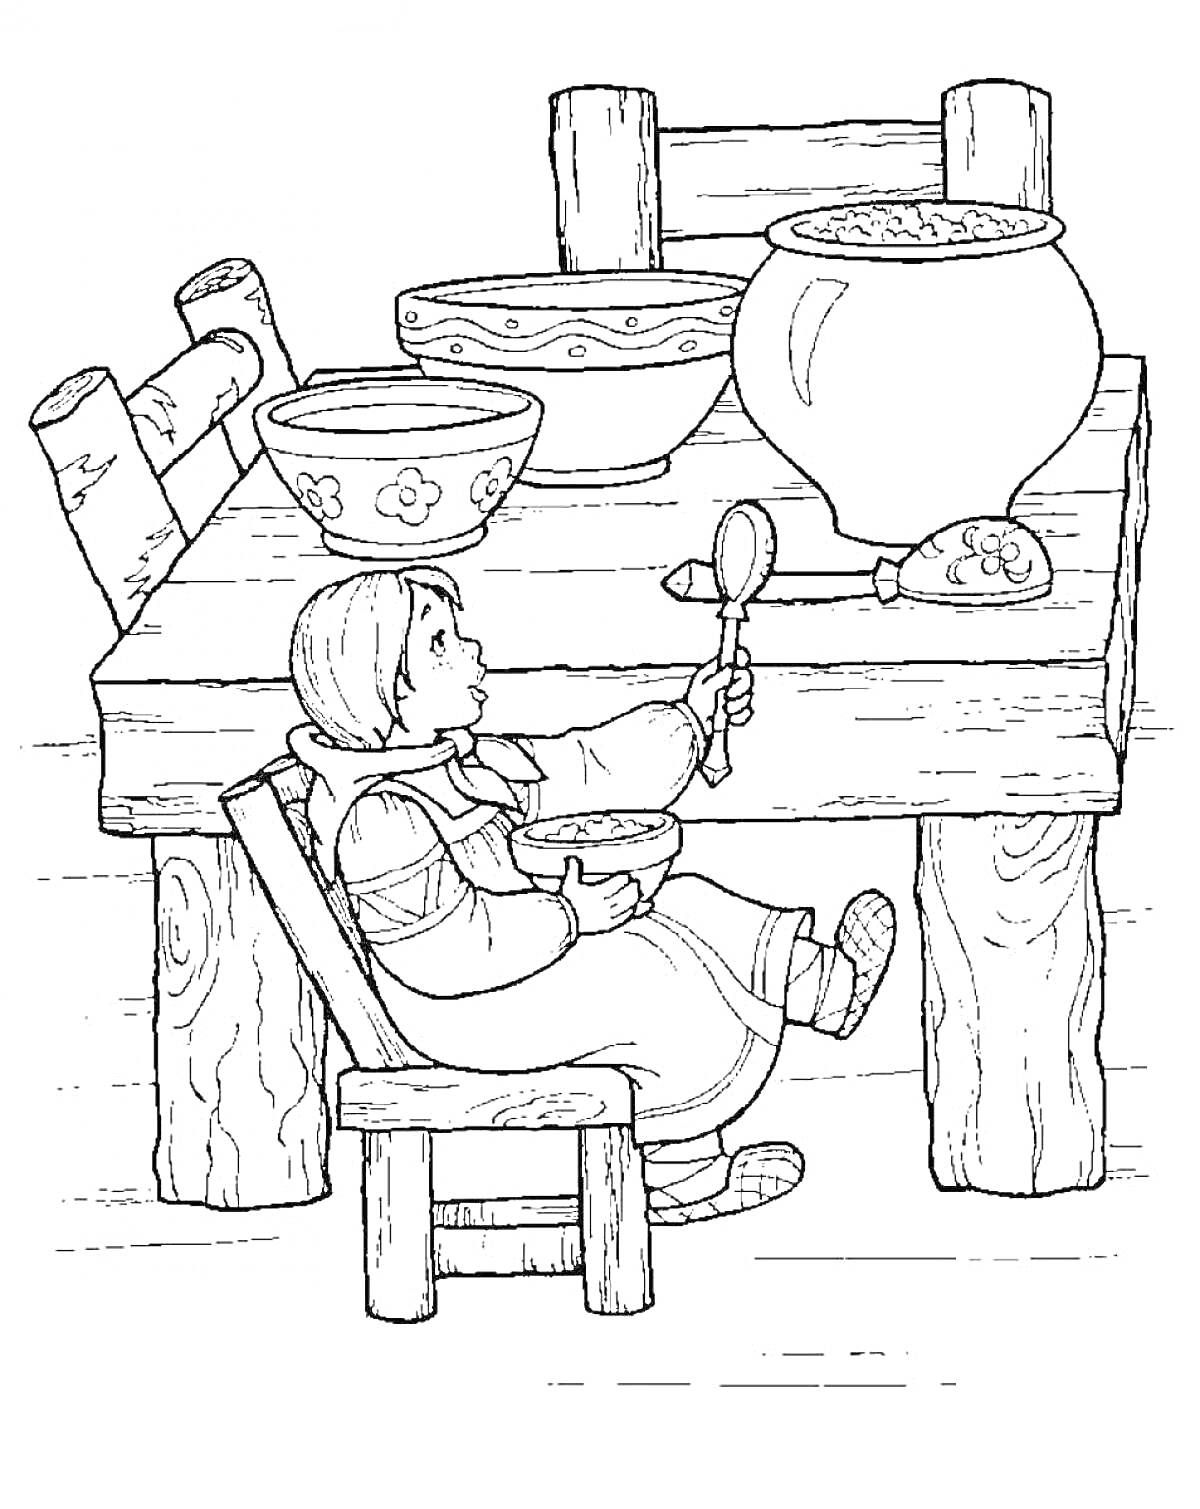 Раскраска Девочка сидит за столом и ест из миски, на столе стоят несколько мисок и большая кастрюля